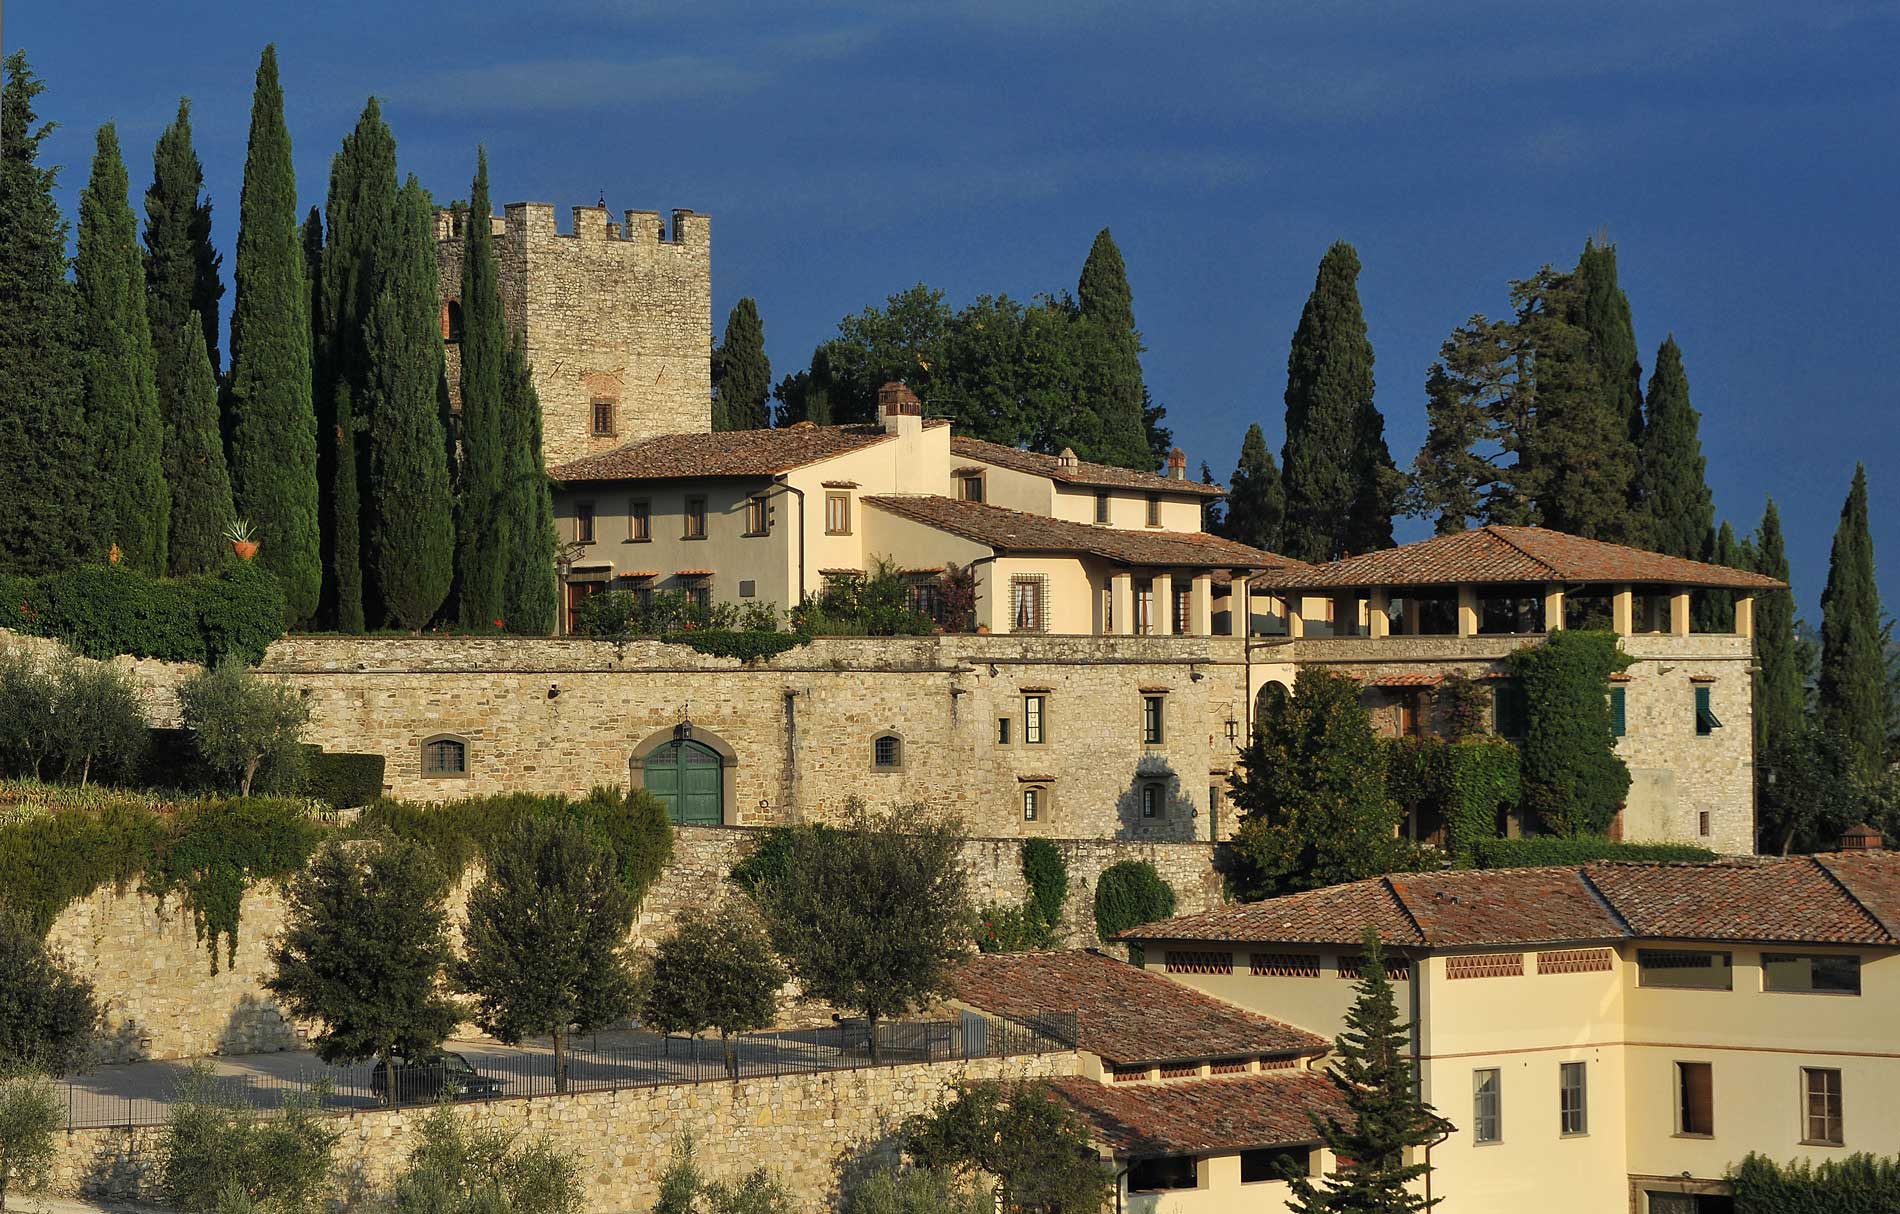 Castello-di-verrazzano-la-Certosina